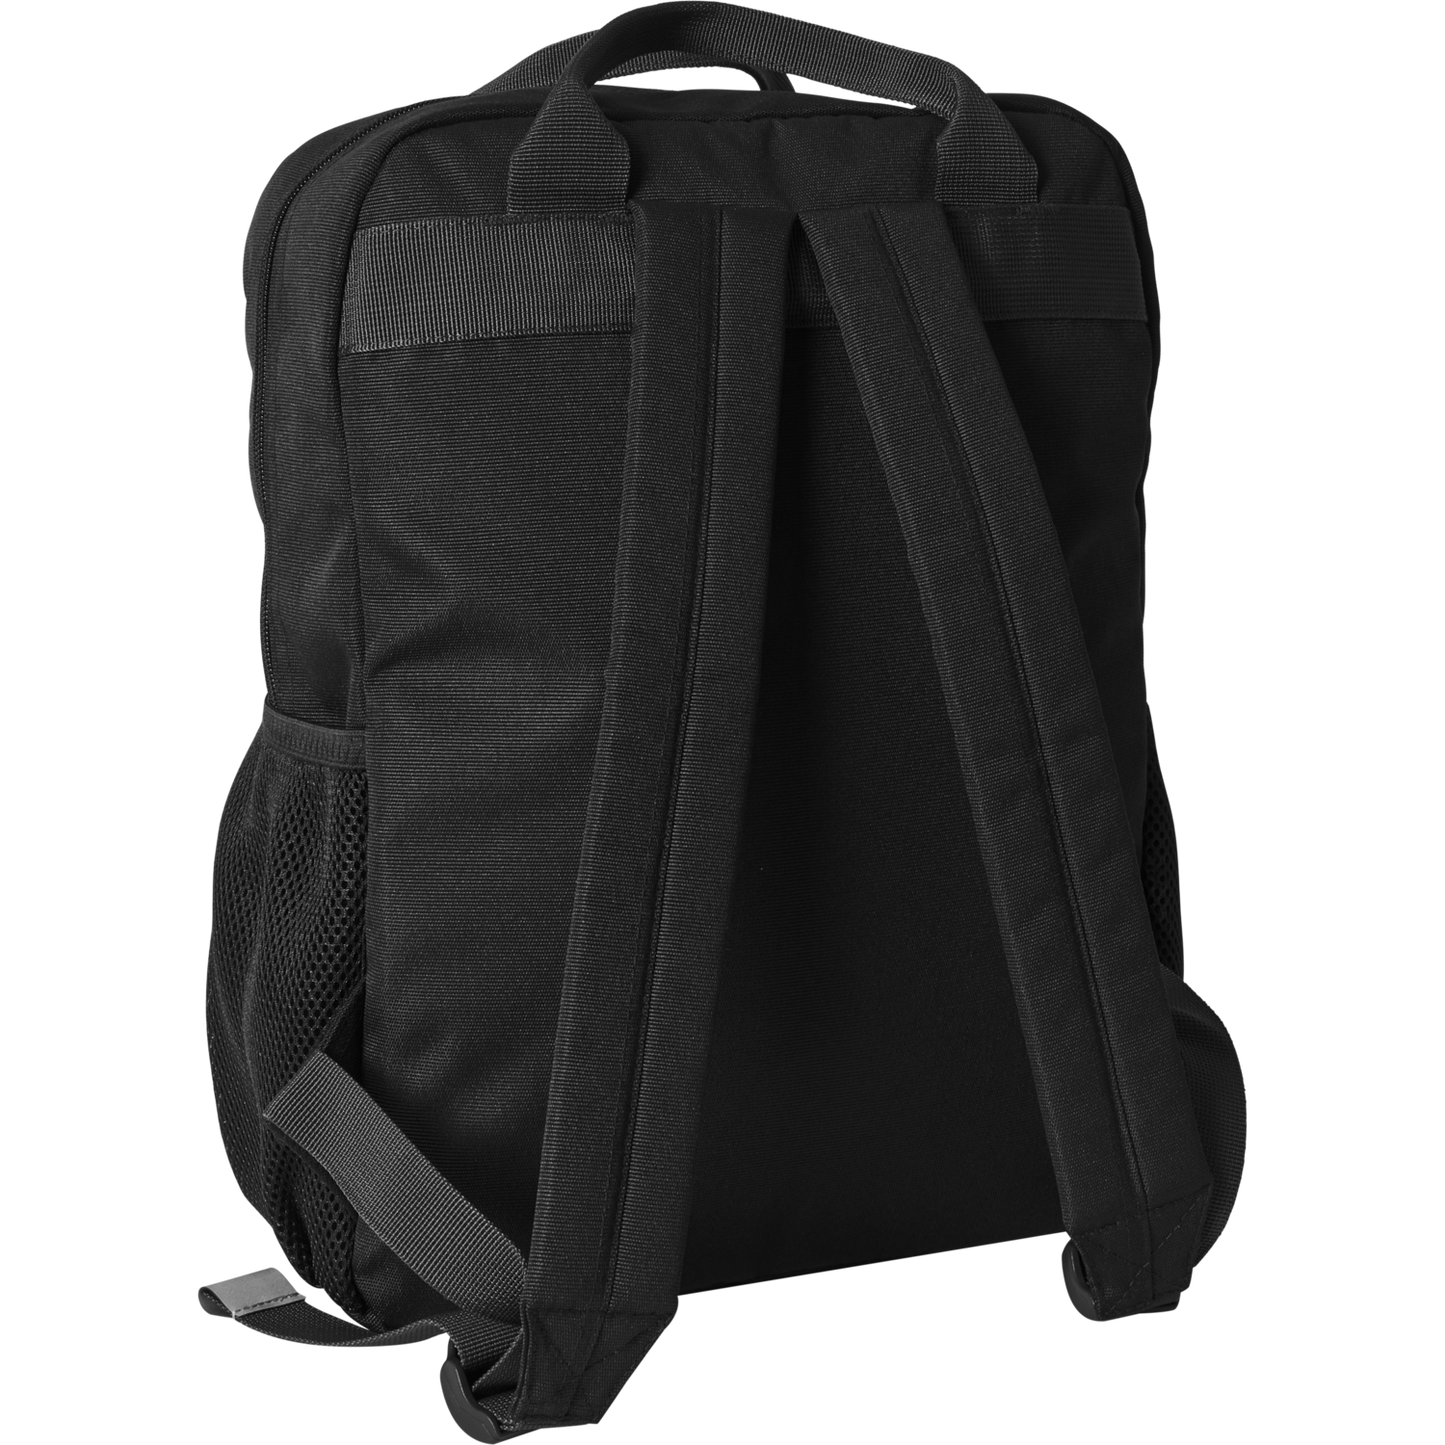 Hummel Black Back Pack with Padded shoulder Straps